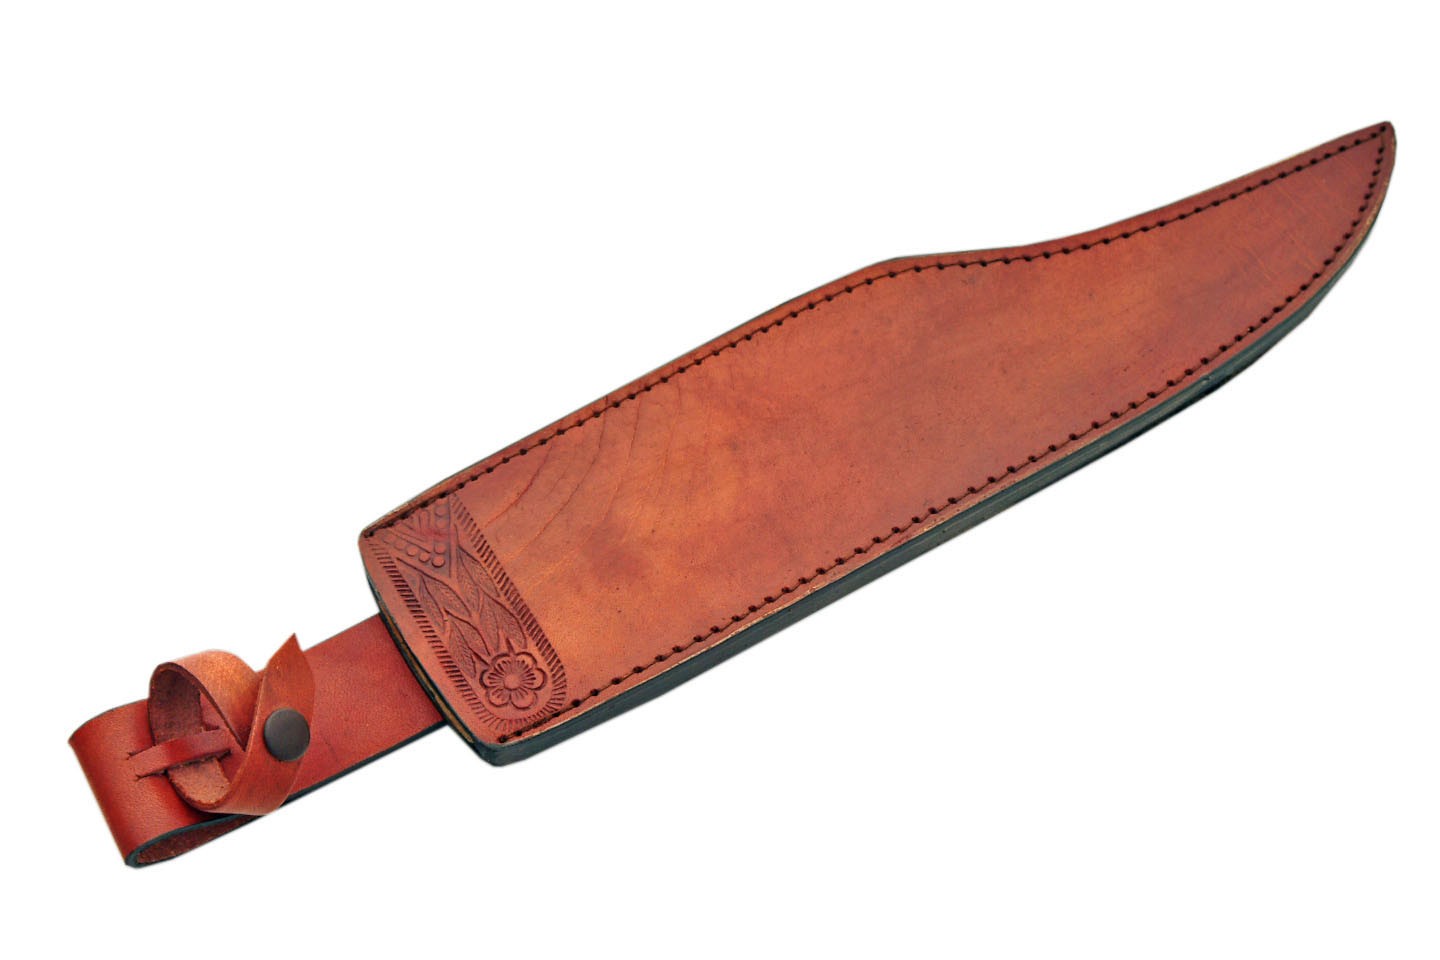 Grand poignard couteau chasse 49cm - Primitive bowie